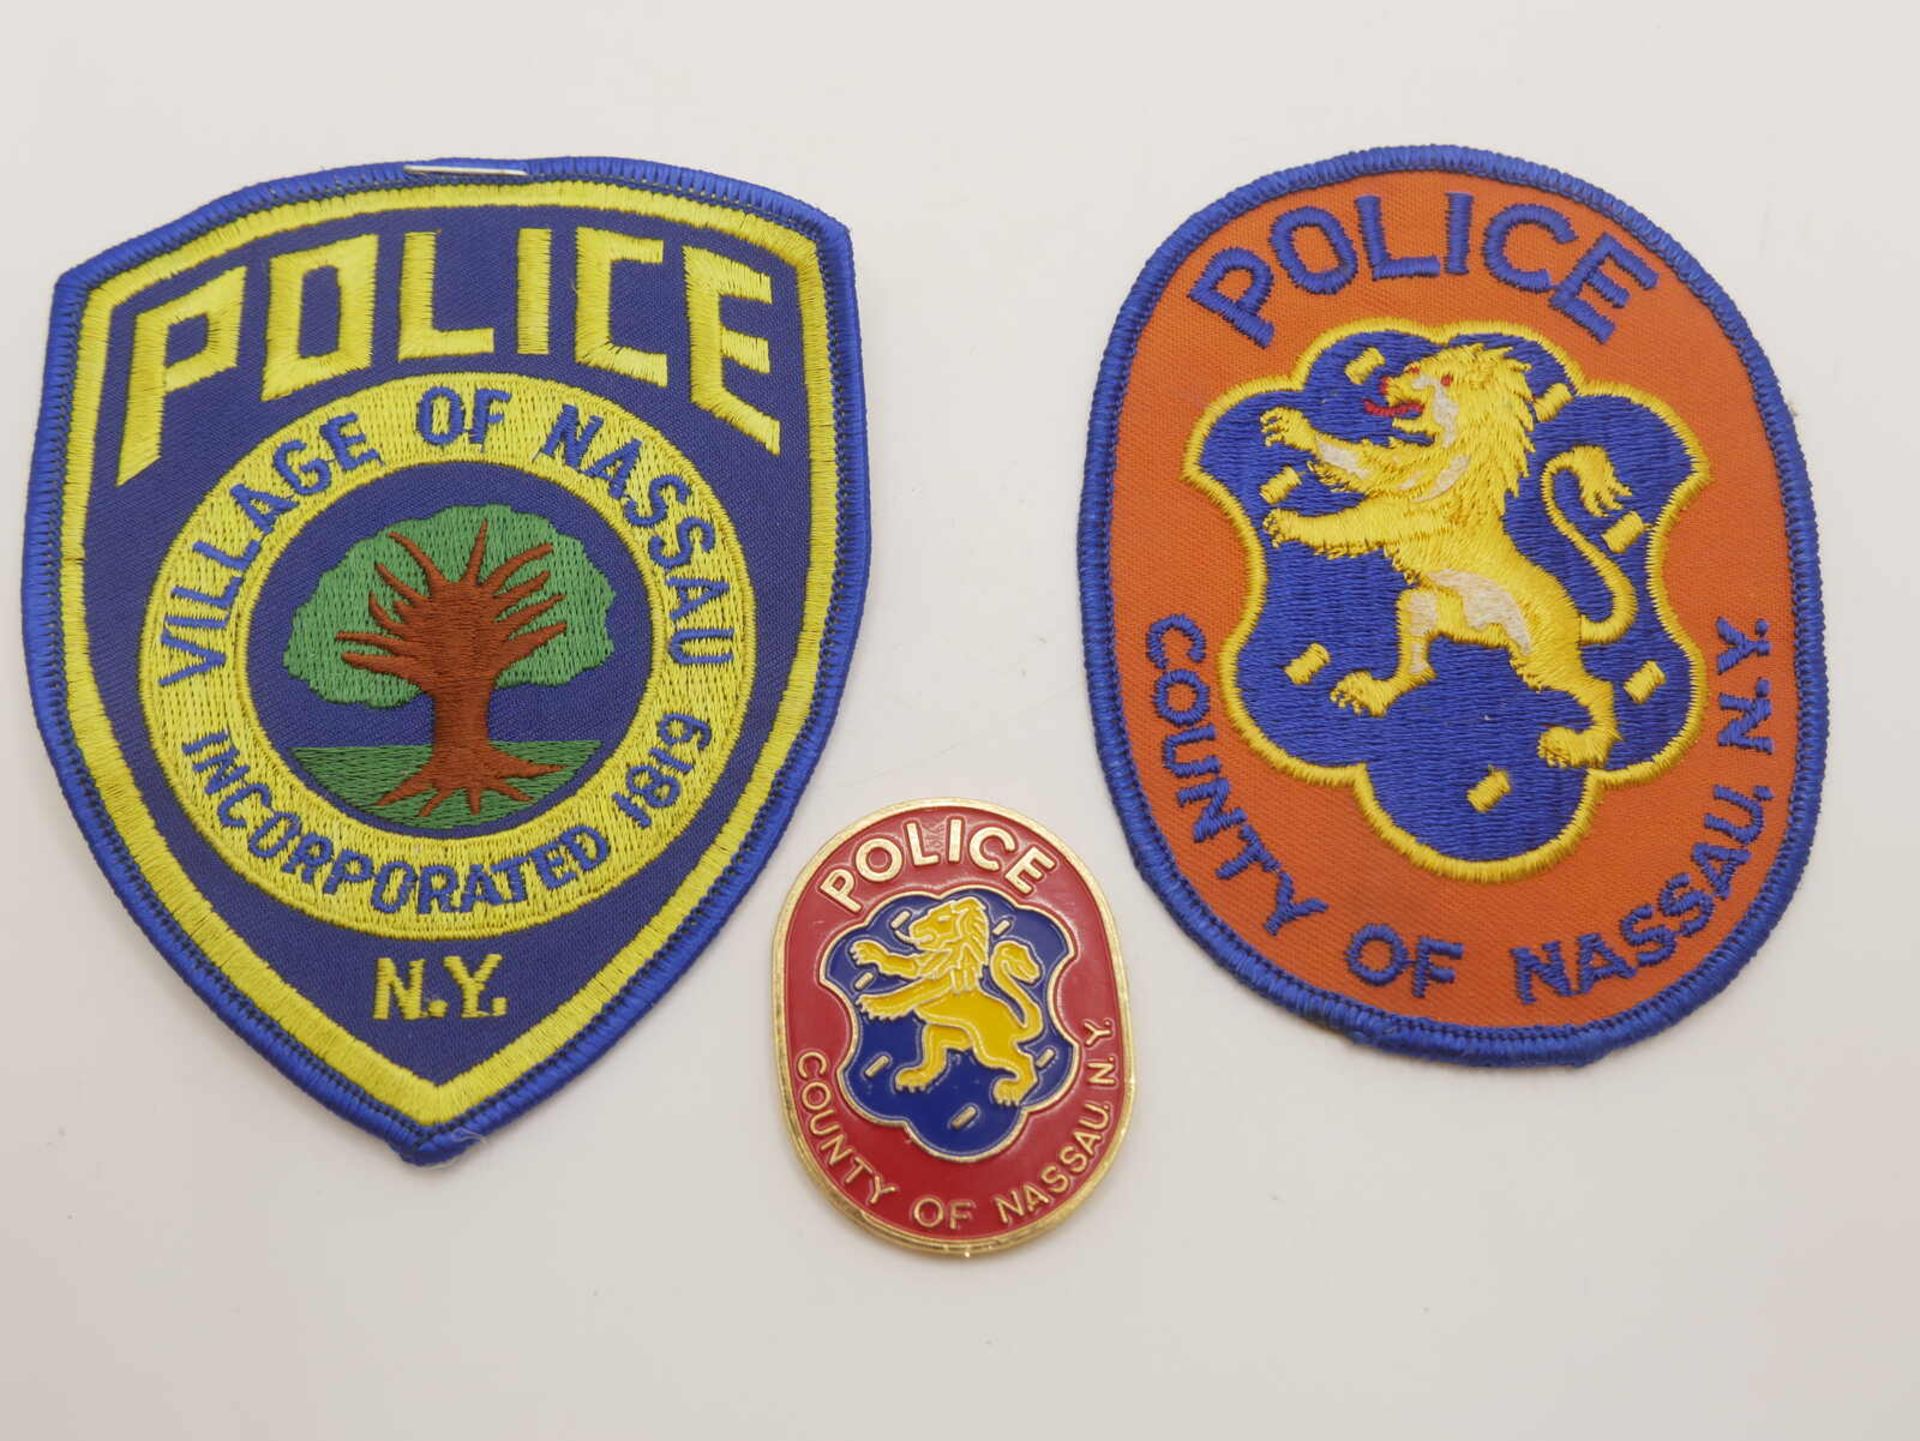 Aus Sammelauflösung! Lot Aufnäher / Patches sowie 1 Marke "Police County of Nassau" insgesamt 3